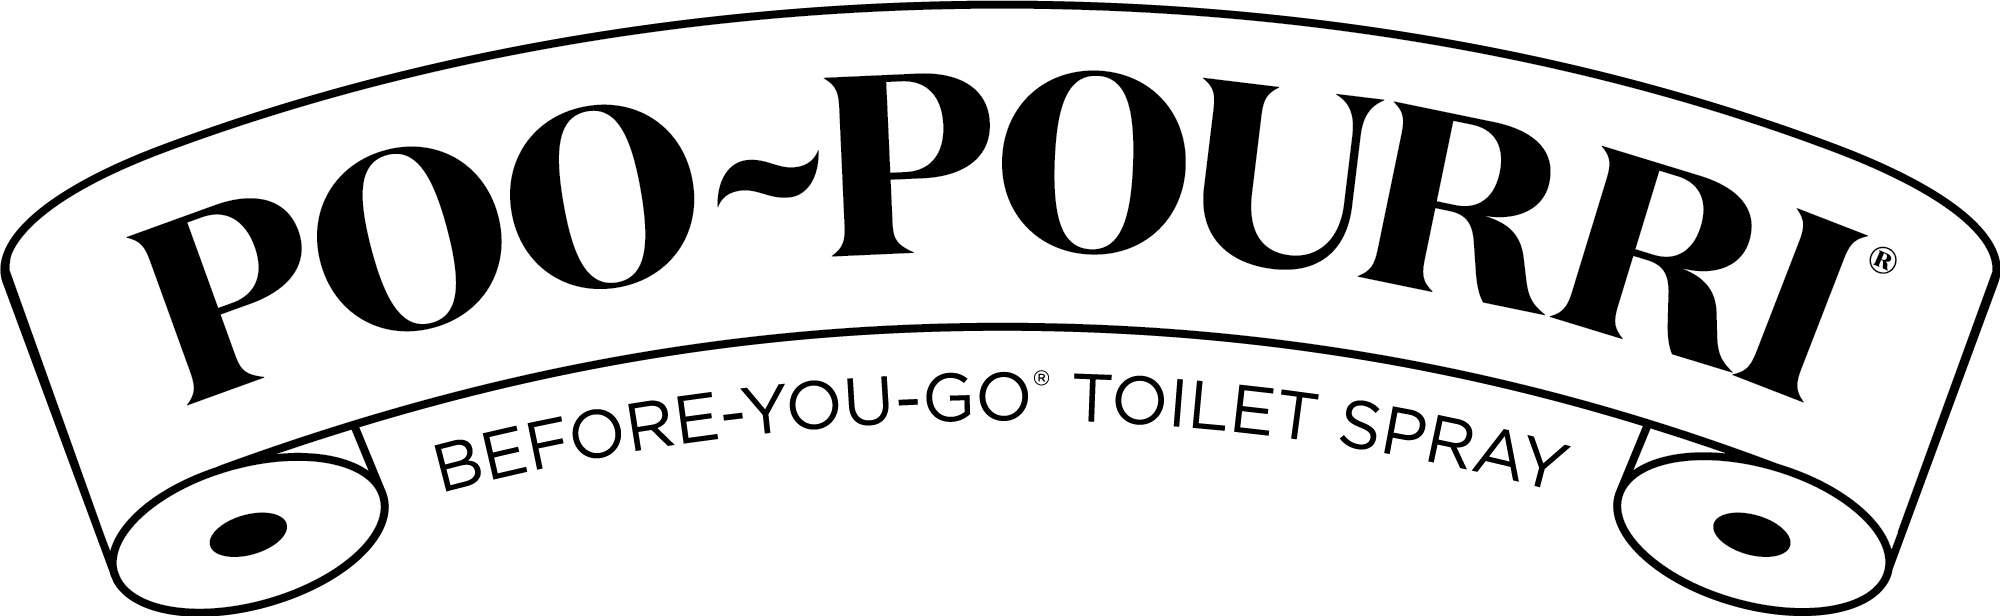 Poo~Pourri